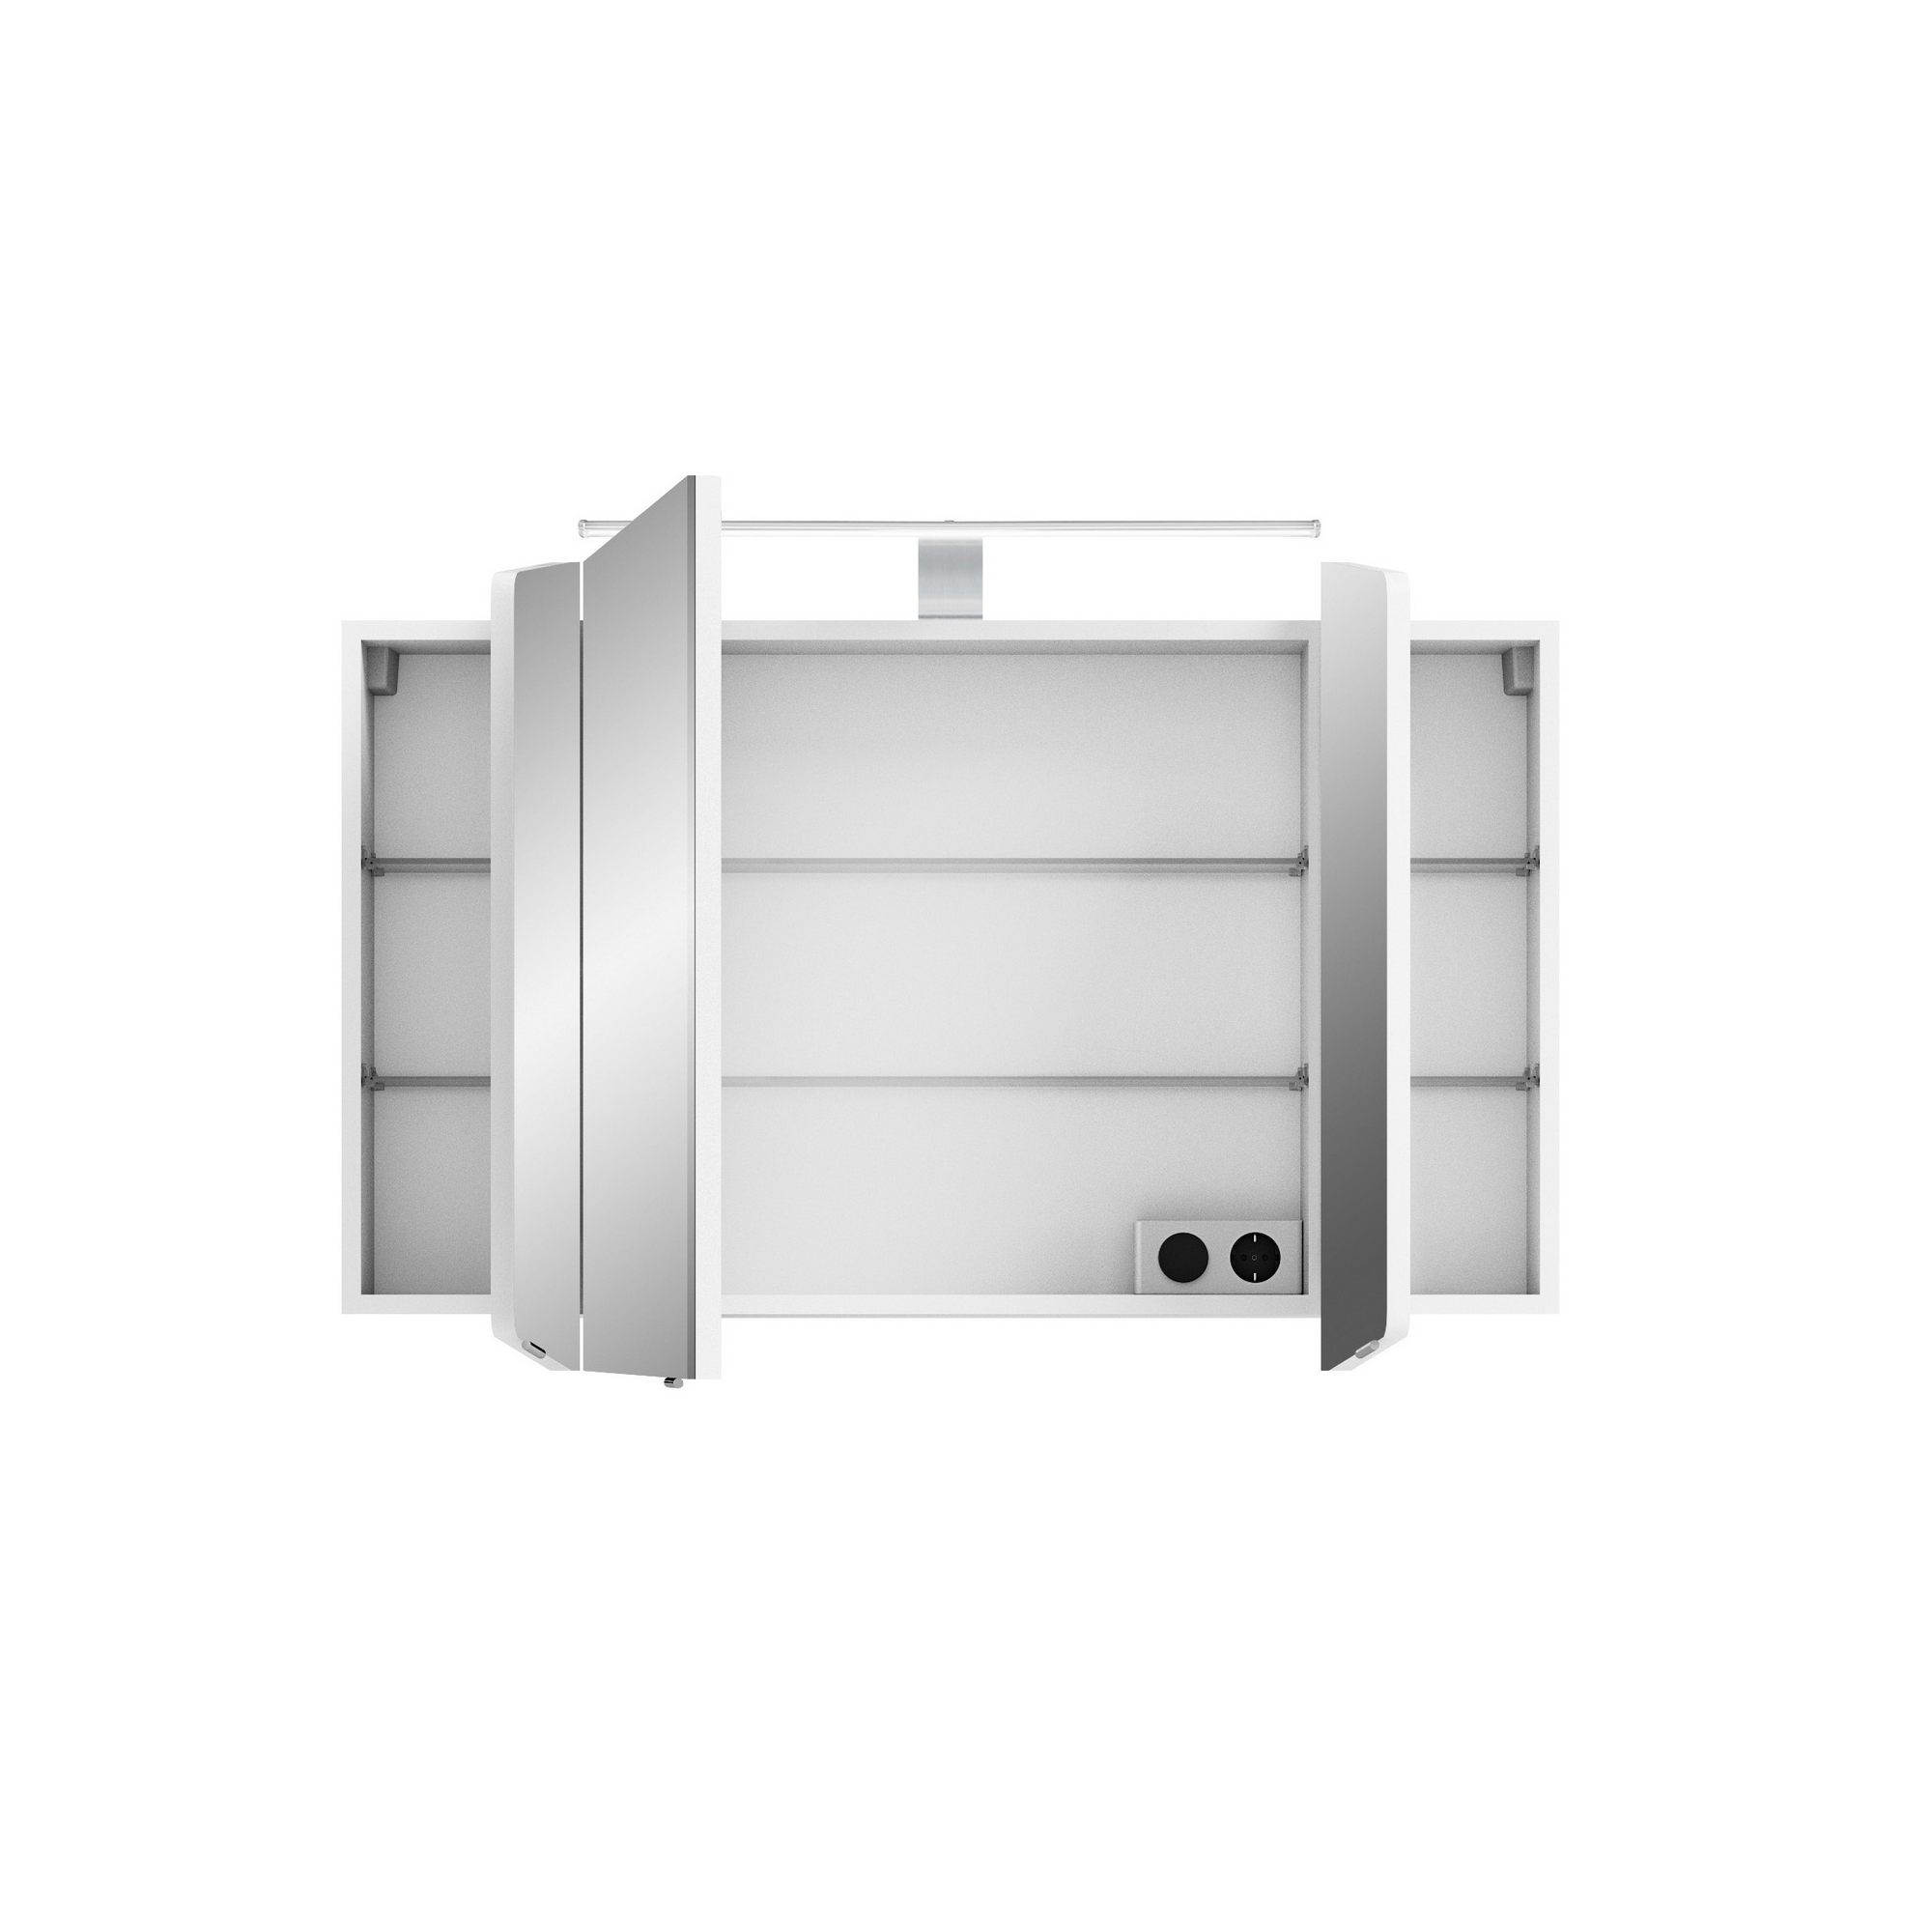 Spiegelschrank 'Taiga' weiß glanz 100 cm mit LED-Aufsatzleuchte + product picture